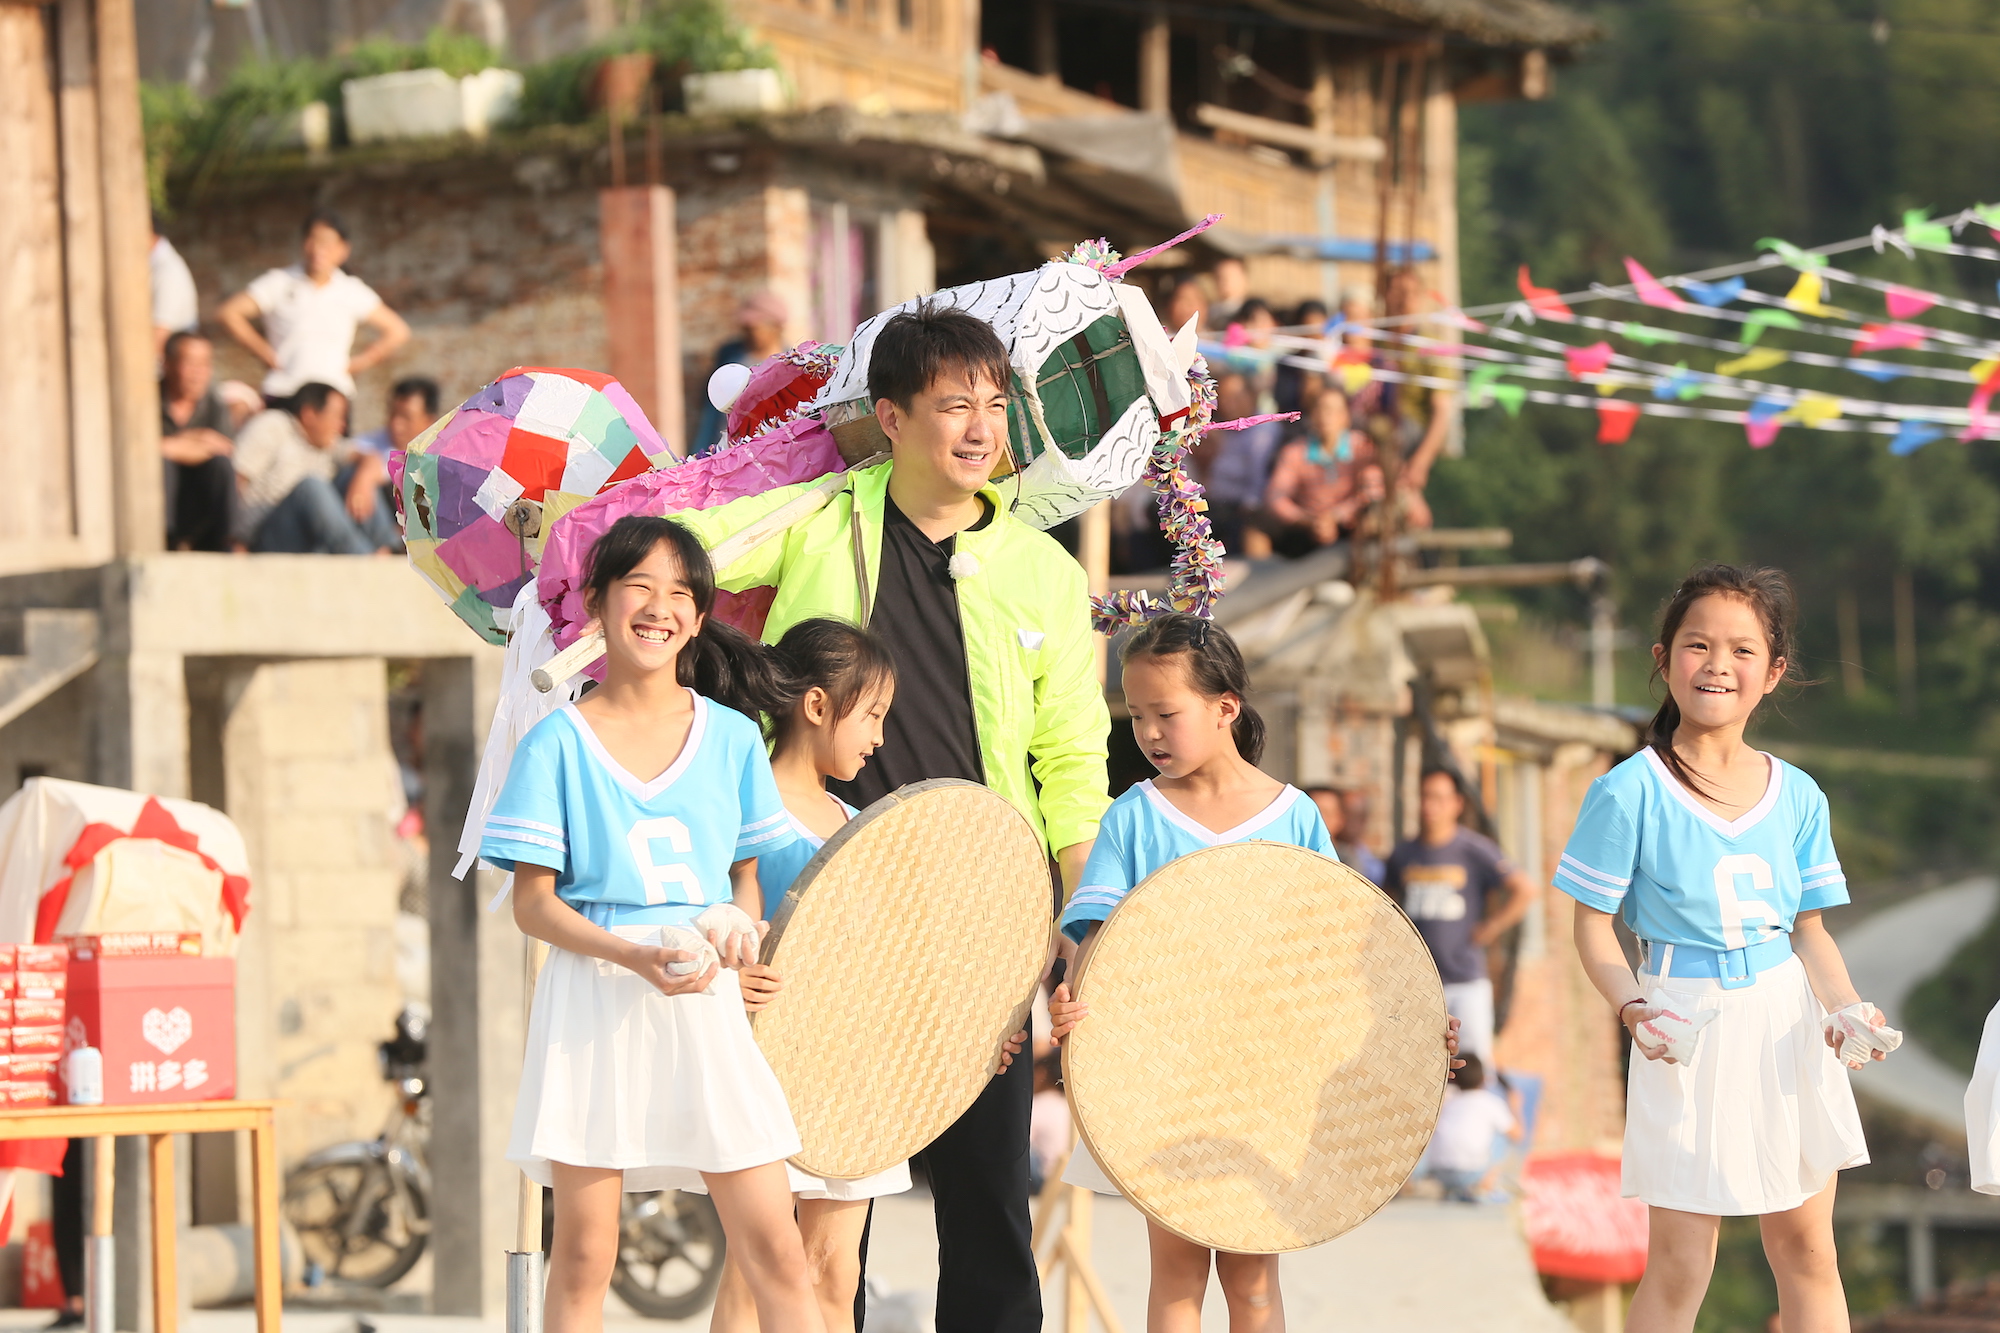 《极限挑战》带领观众走进了桂林龙胜东升村的留守儿童,开启了一场